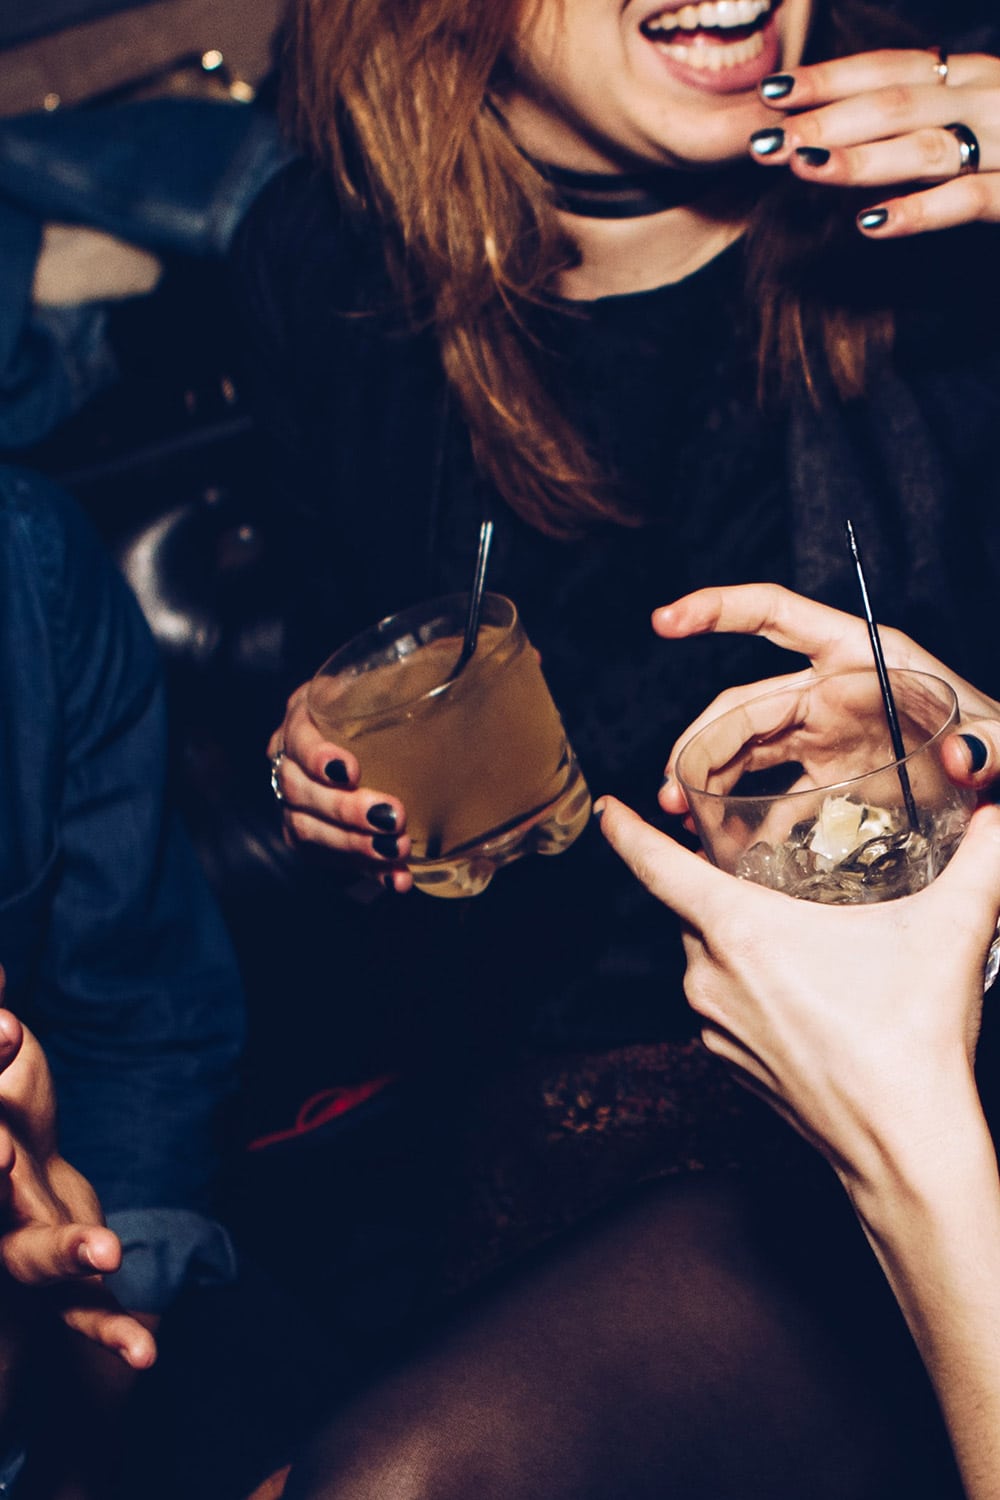 Angesagte Bars und Clubs prägen den Medienhafen und den benachbarten Stadtteil Bilk. Tanze die Nacht durch, triff dich mit Freunden auf einen Cocktail oder mische dich unter die Nachbarschaft.